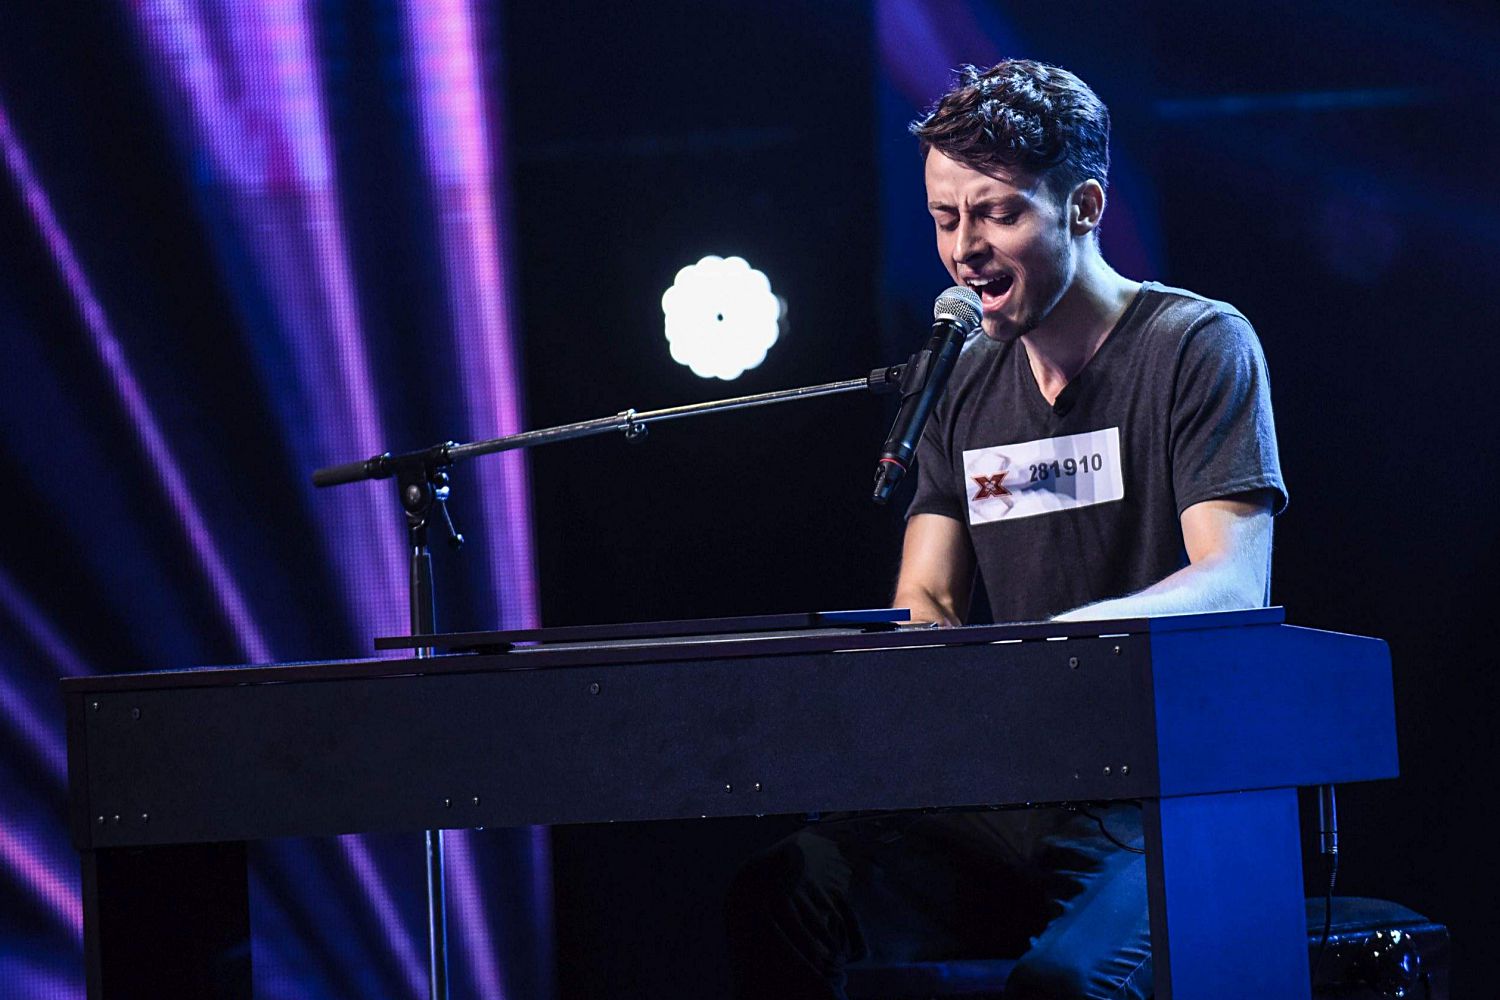 Alex Țală în audiții la X Factor România 2018